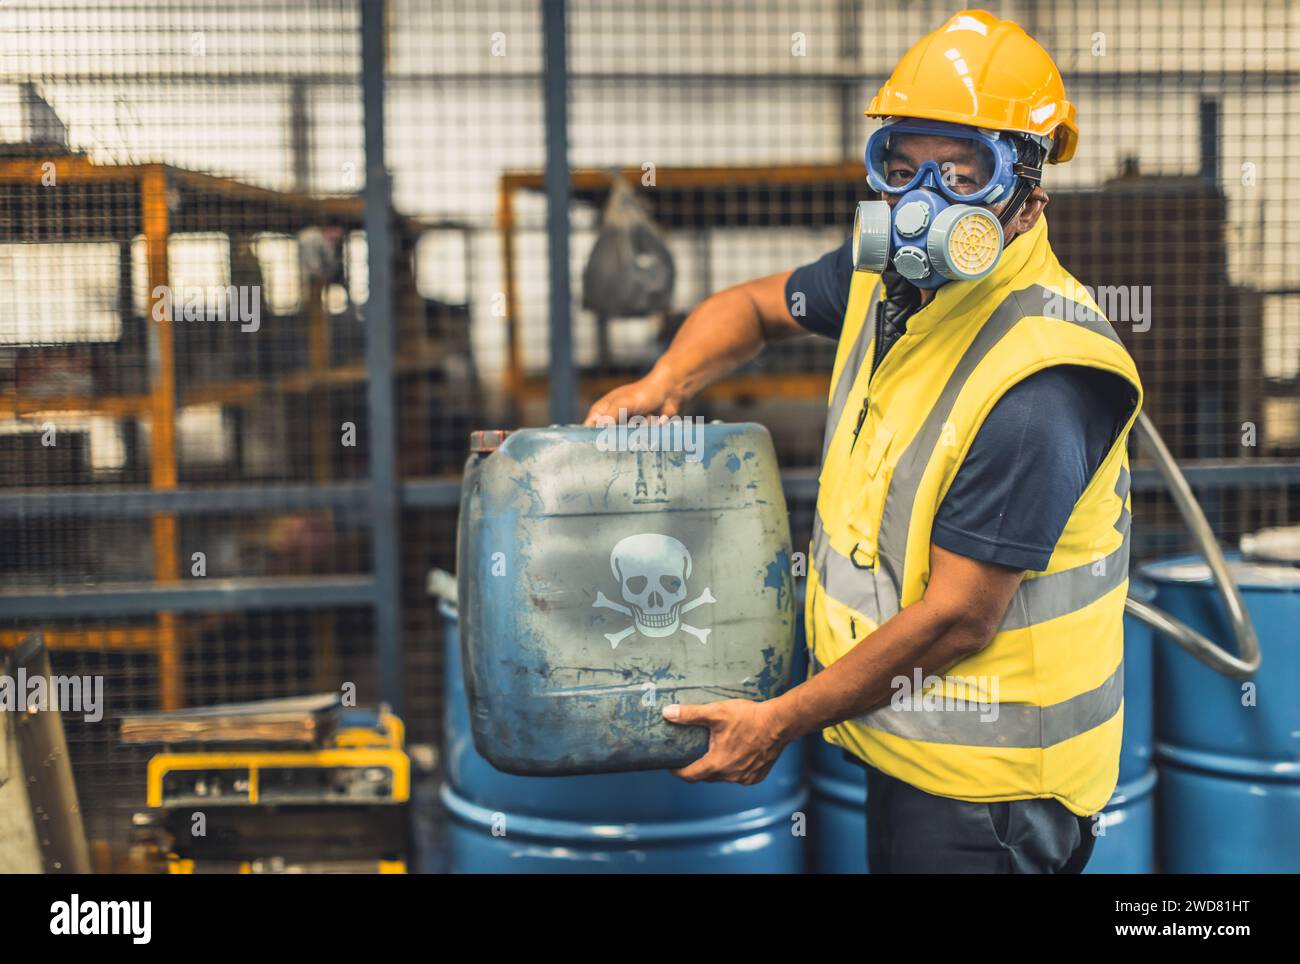 Sicherheitsteam für giftige chemische Gase Arbeiten Reinigung in Gefahrenfabrik Werkstattumgebung Verunreinigungssicherheit und -Schutz Stockfoto